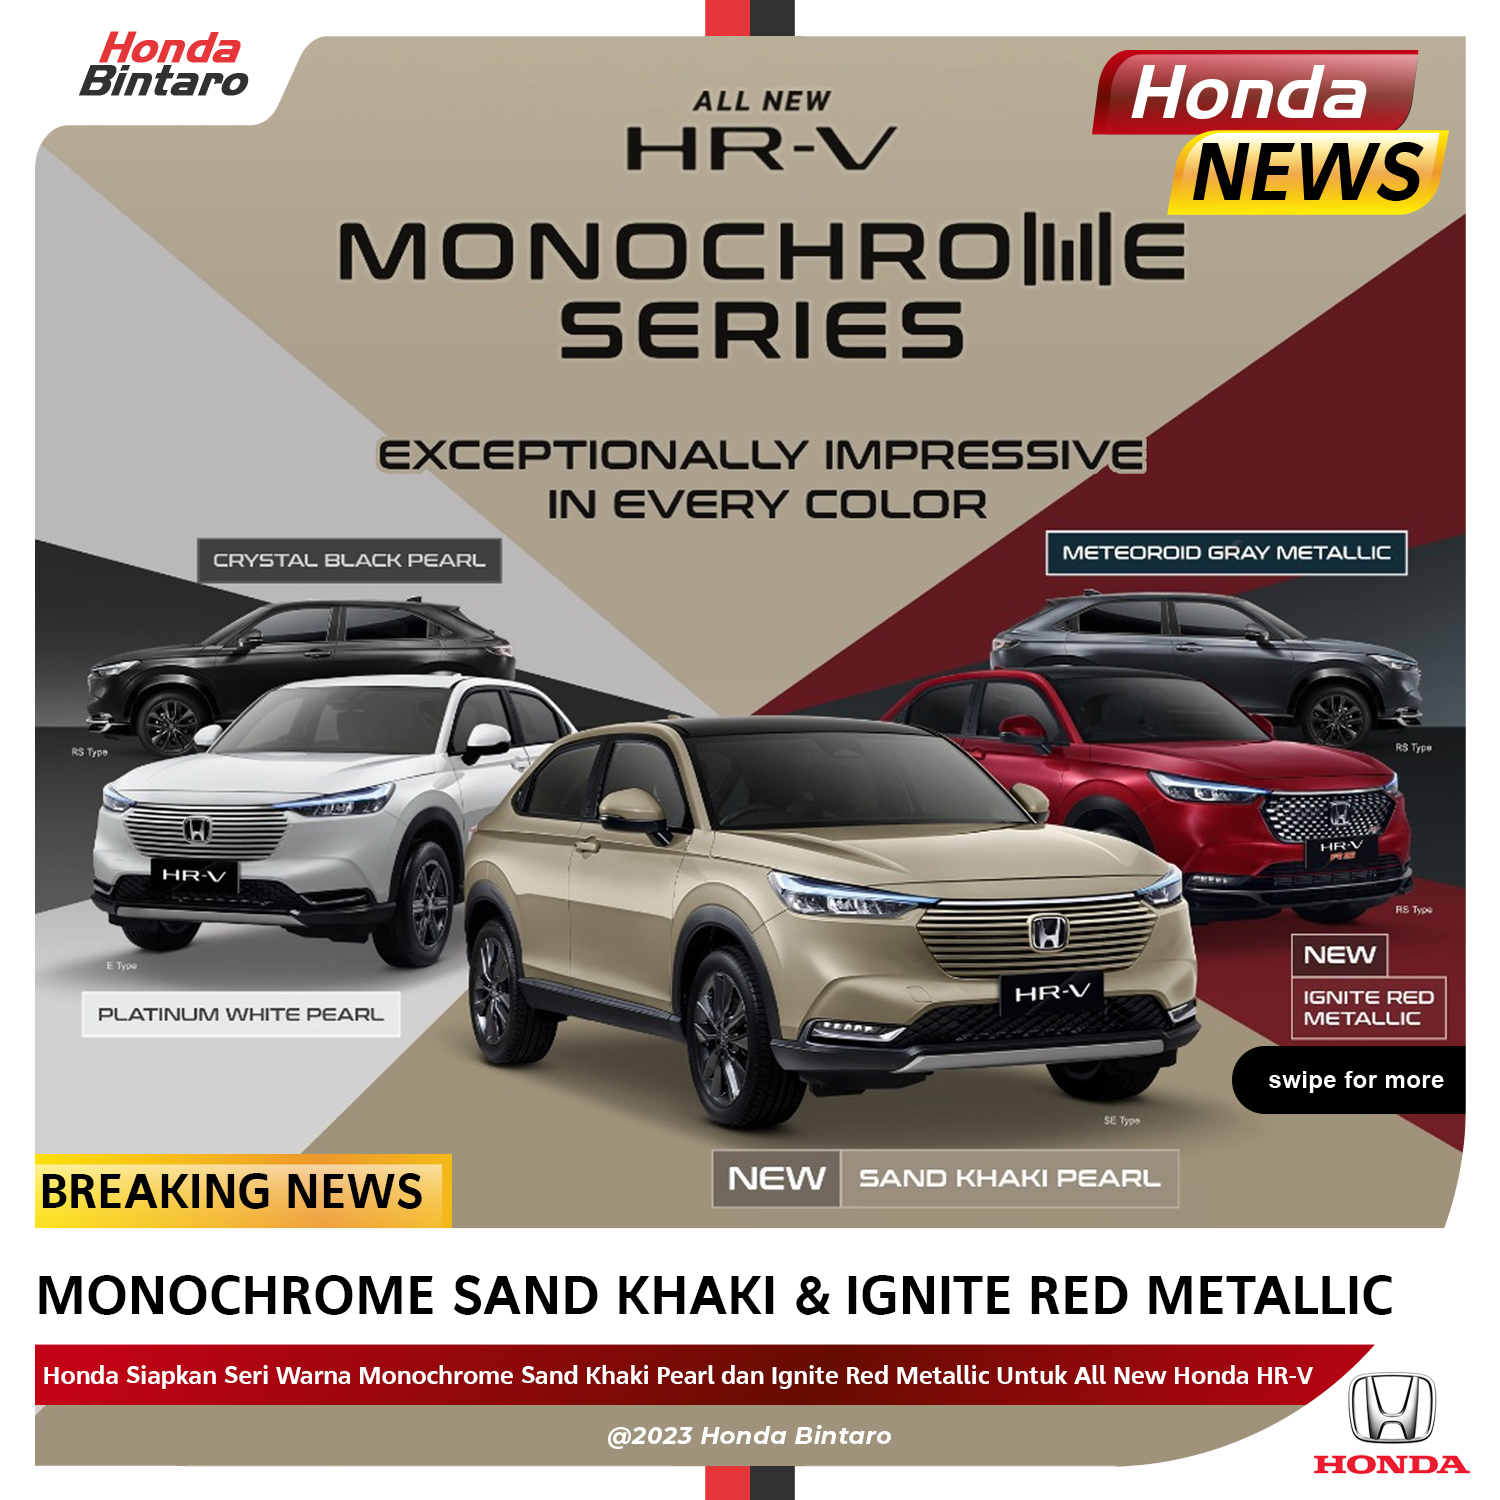 All New Honda HR-V Hadir dengan Seri Warna Baru: Monochrome Sand Khaki Pearl dan Ignite Red Metallic